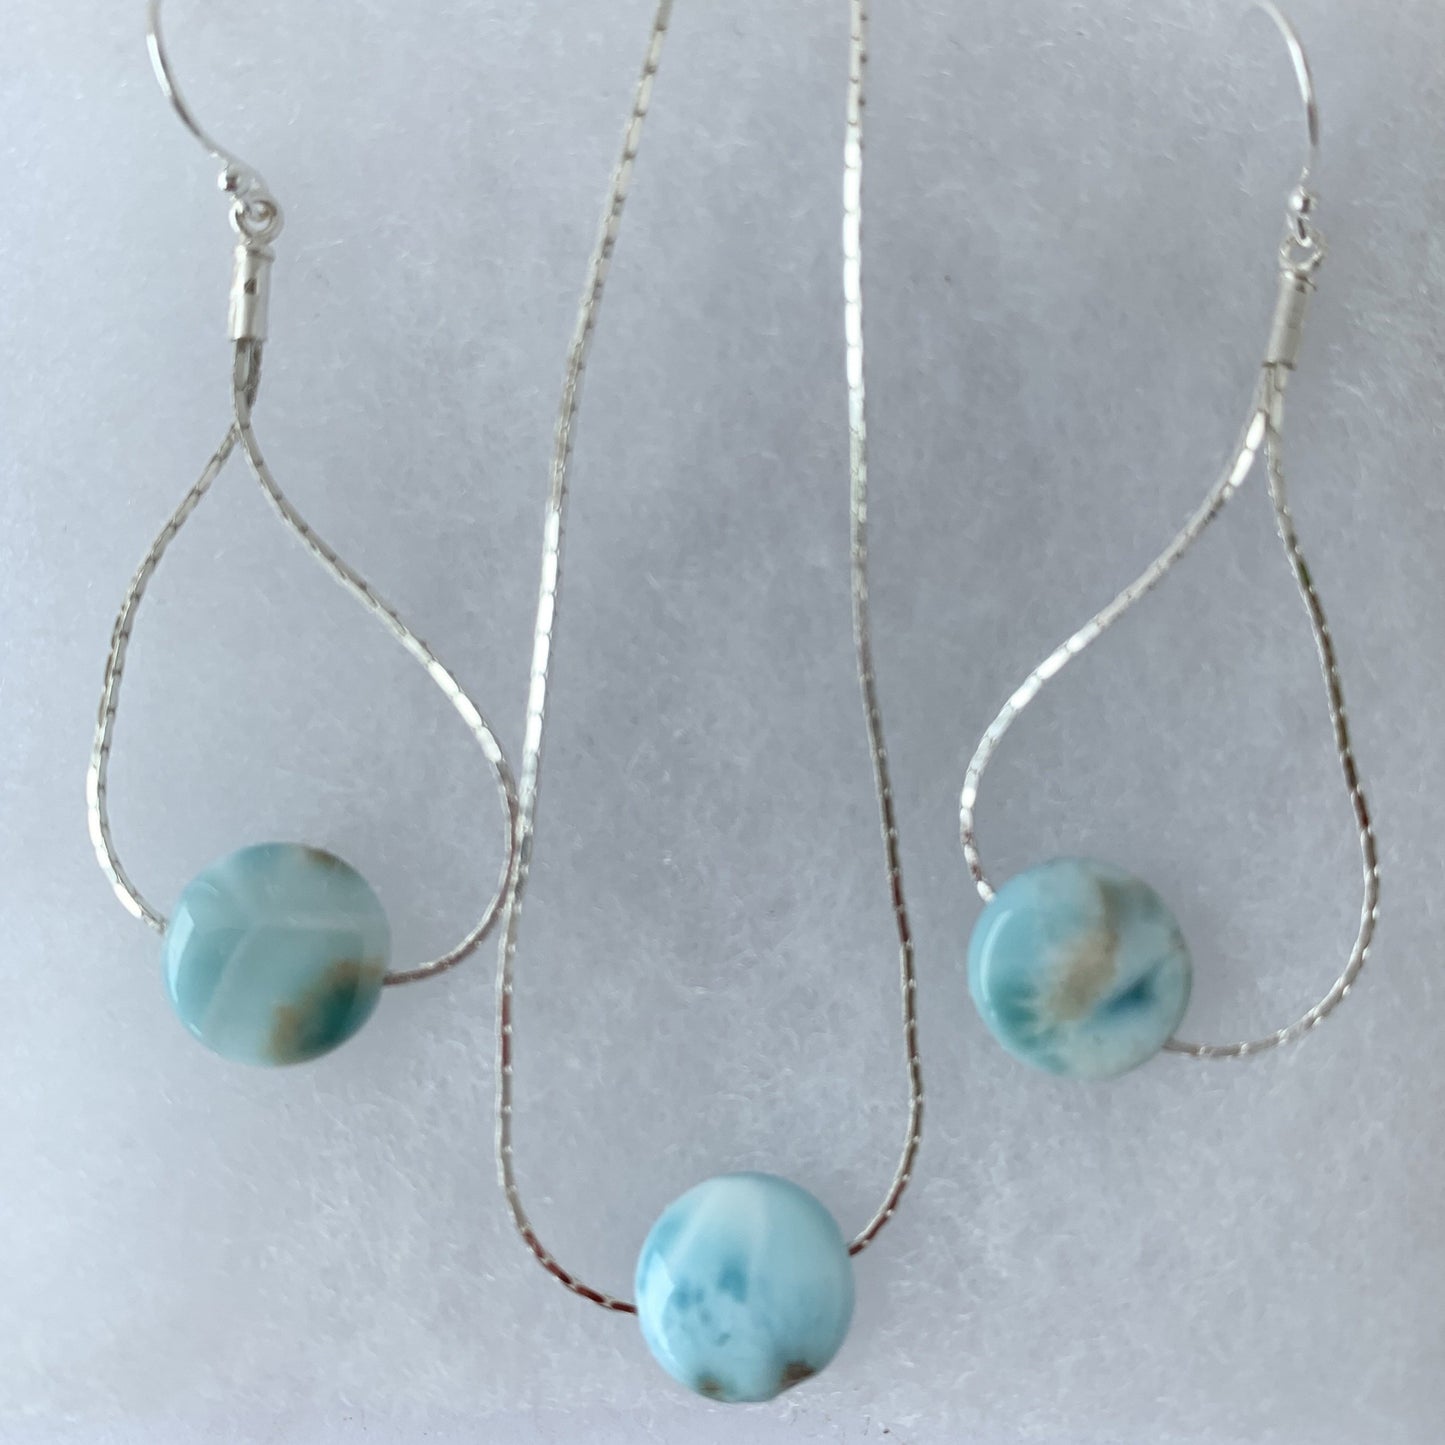 Bahamas Blue pendant and earrings set